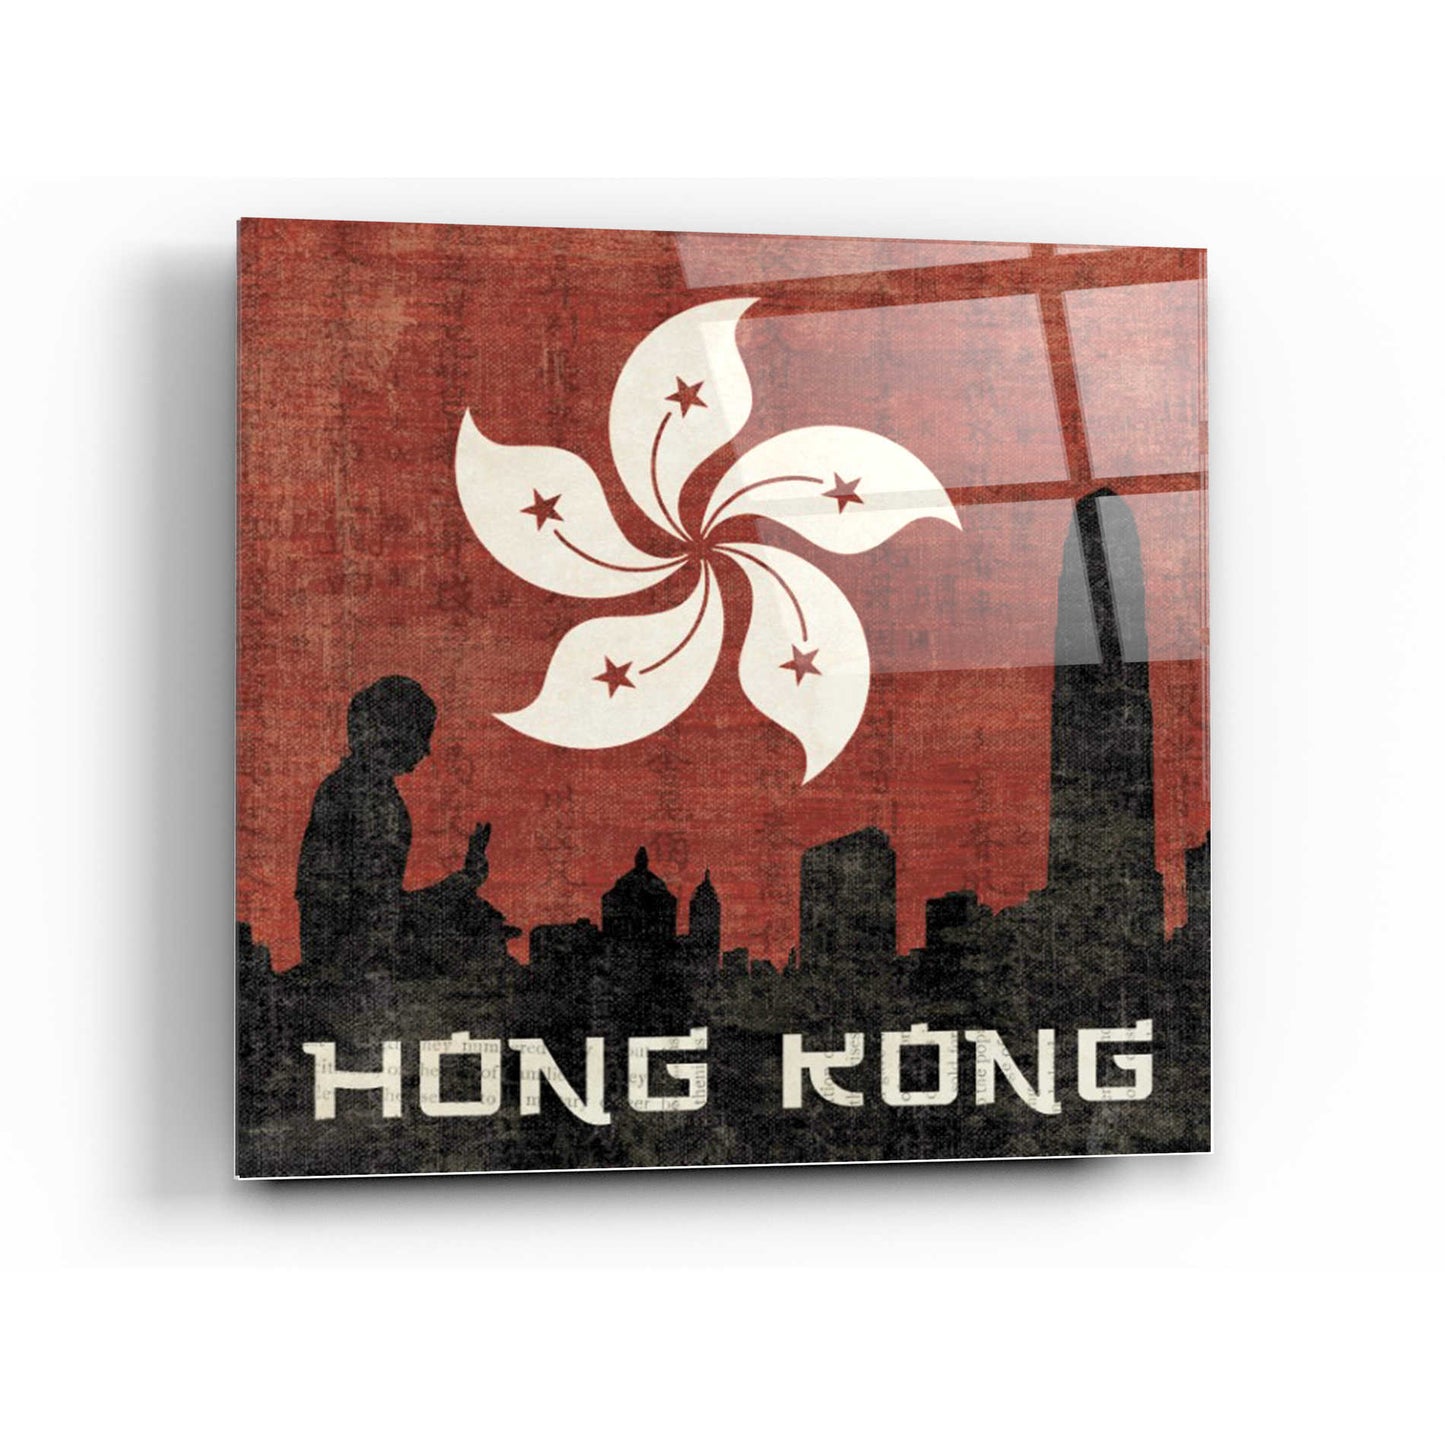 Epic Art 'Hong Kong' by Moira Hershey, Acrylic Glass Wall Art,24x24